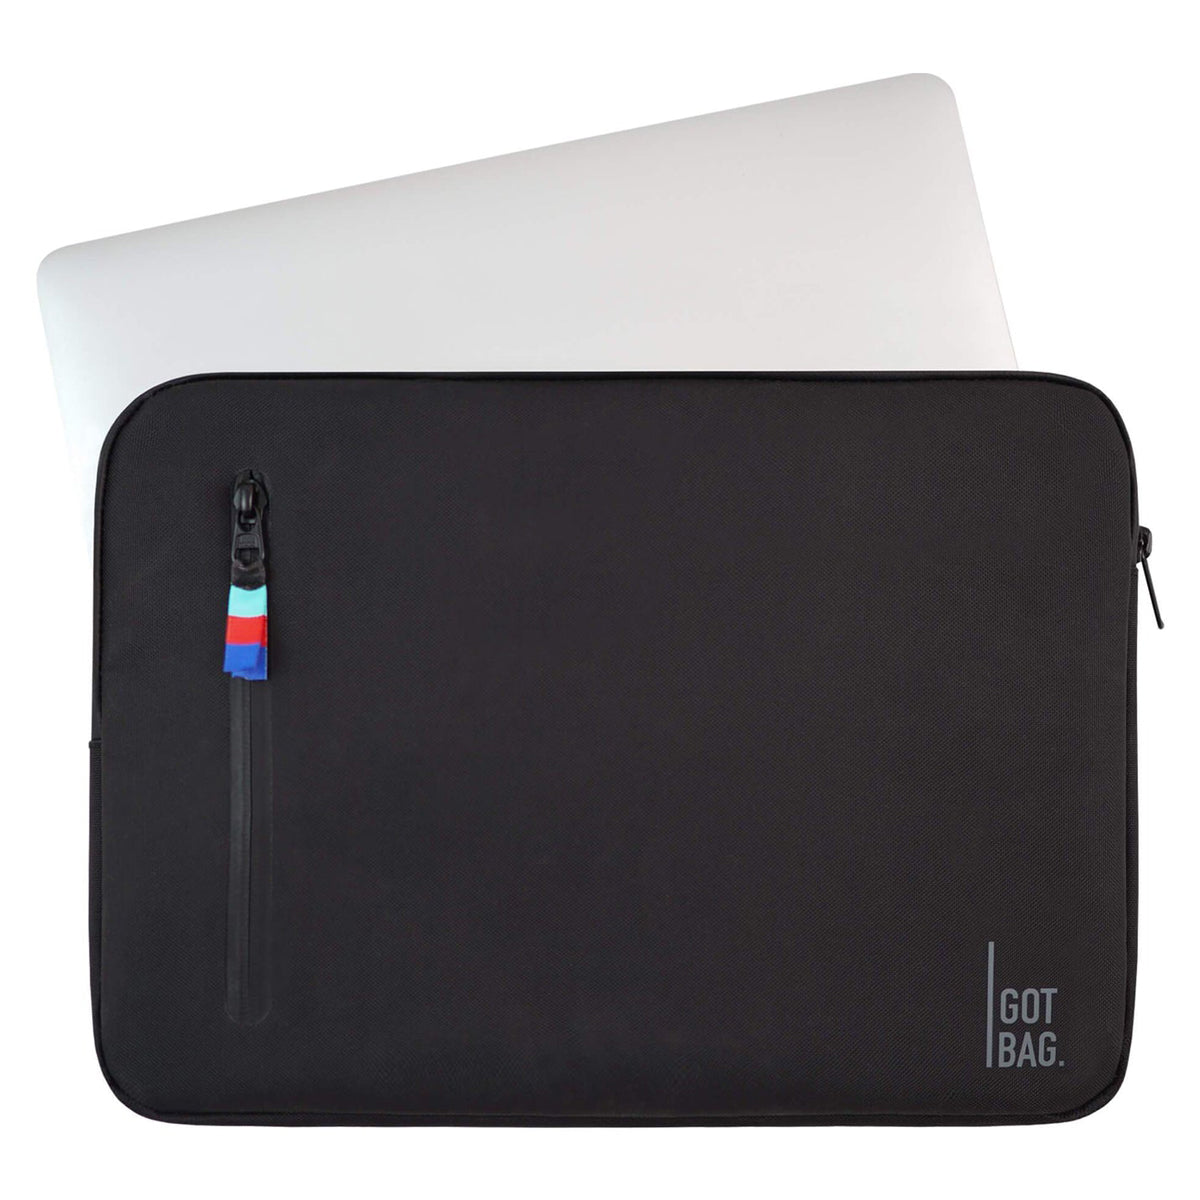 Got Bag Laptopsleeve 15 in Bag - Black image 3